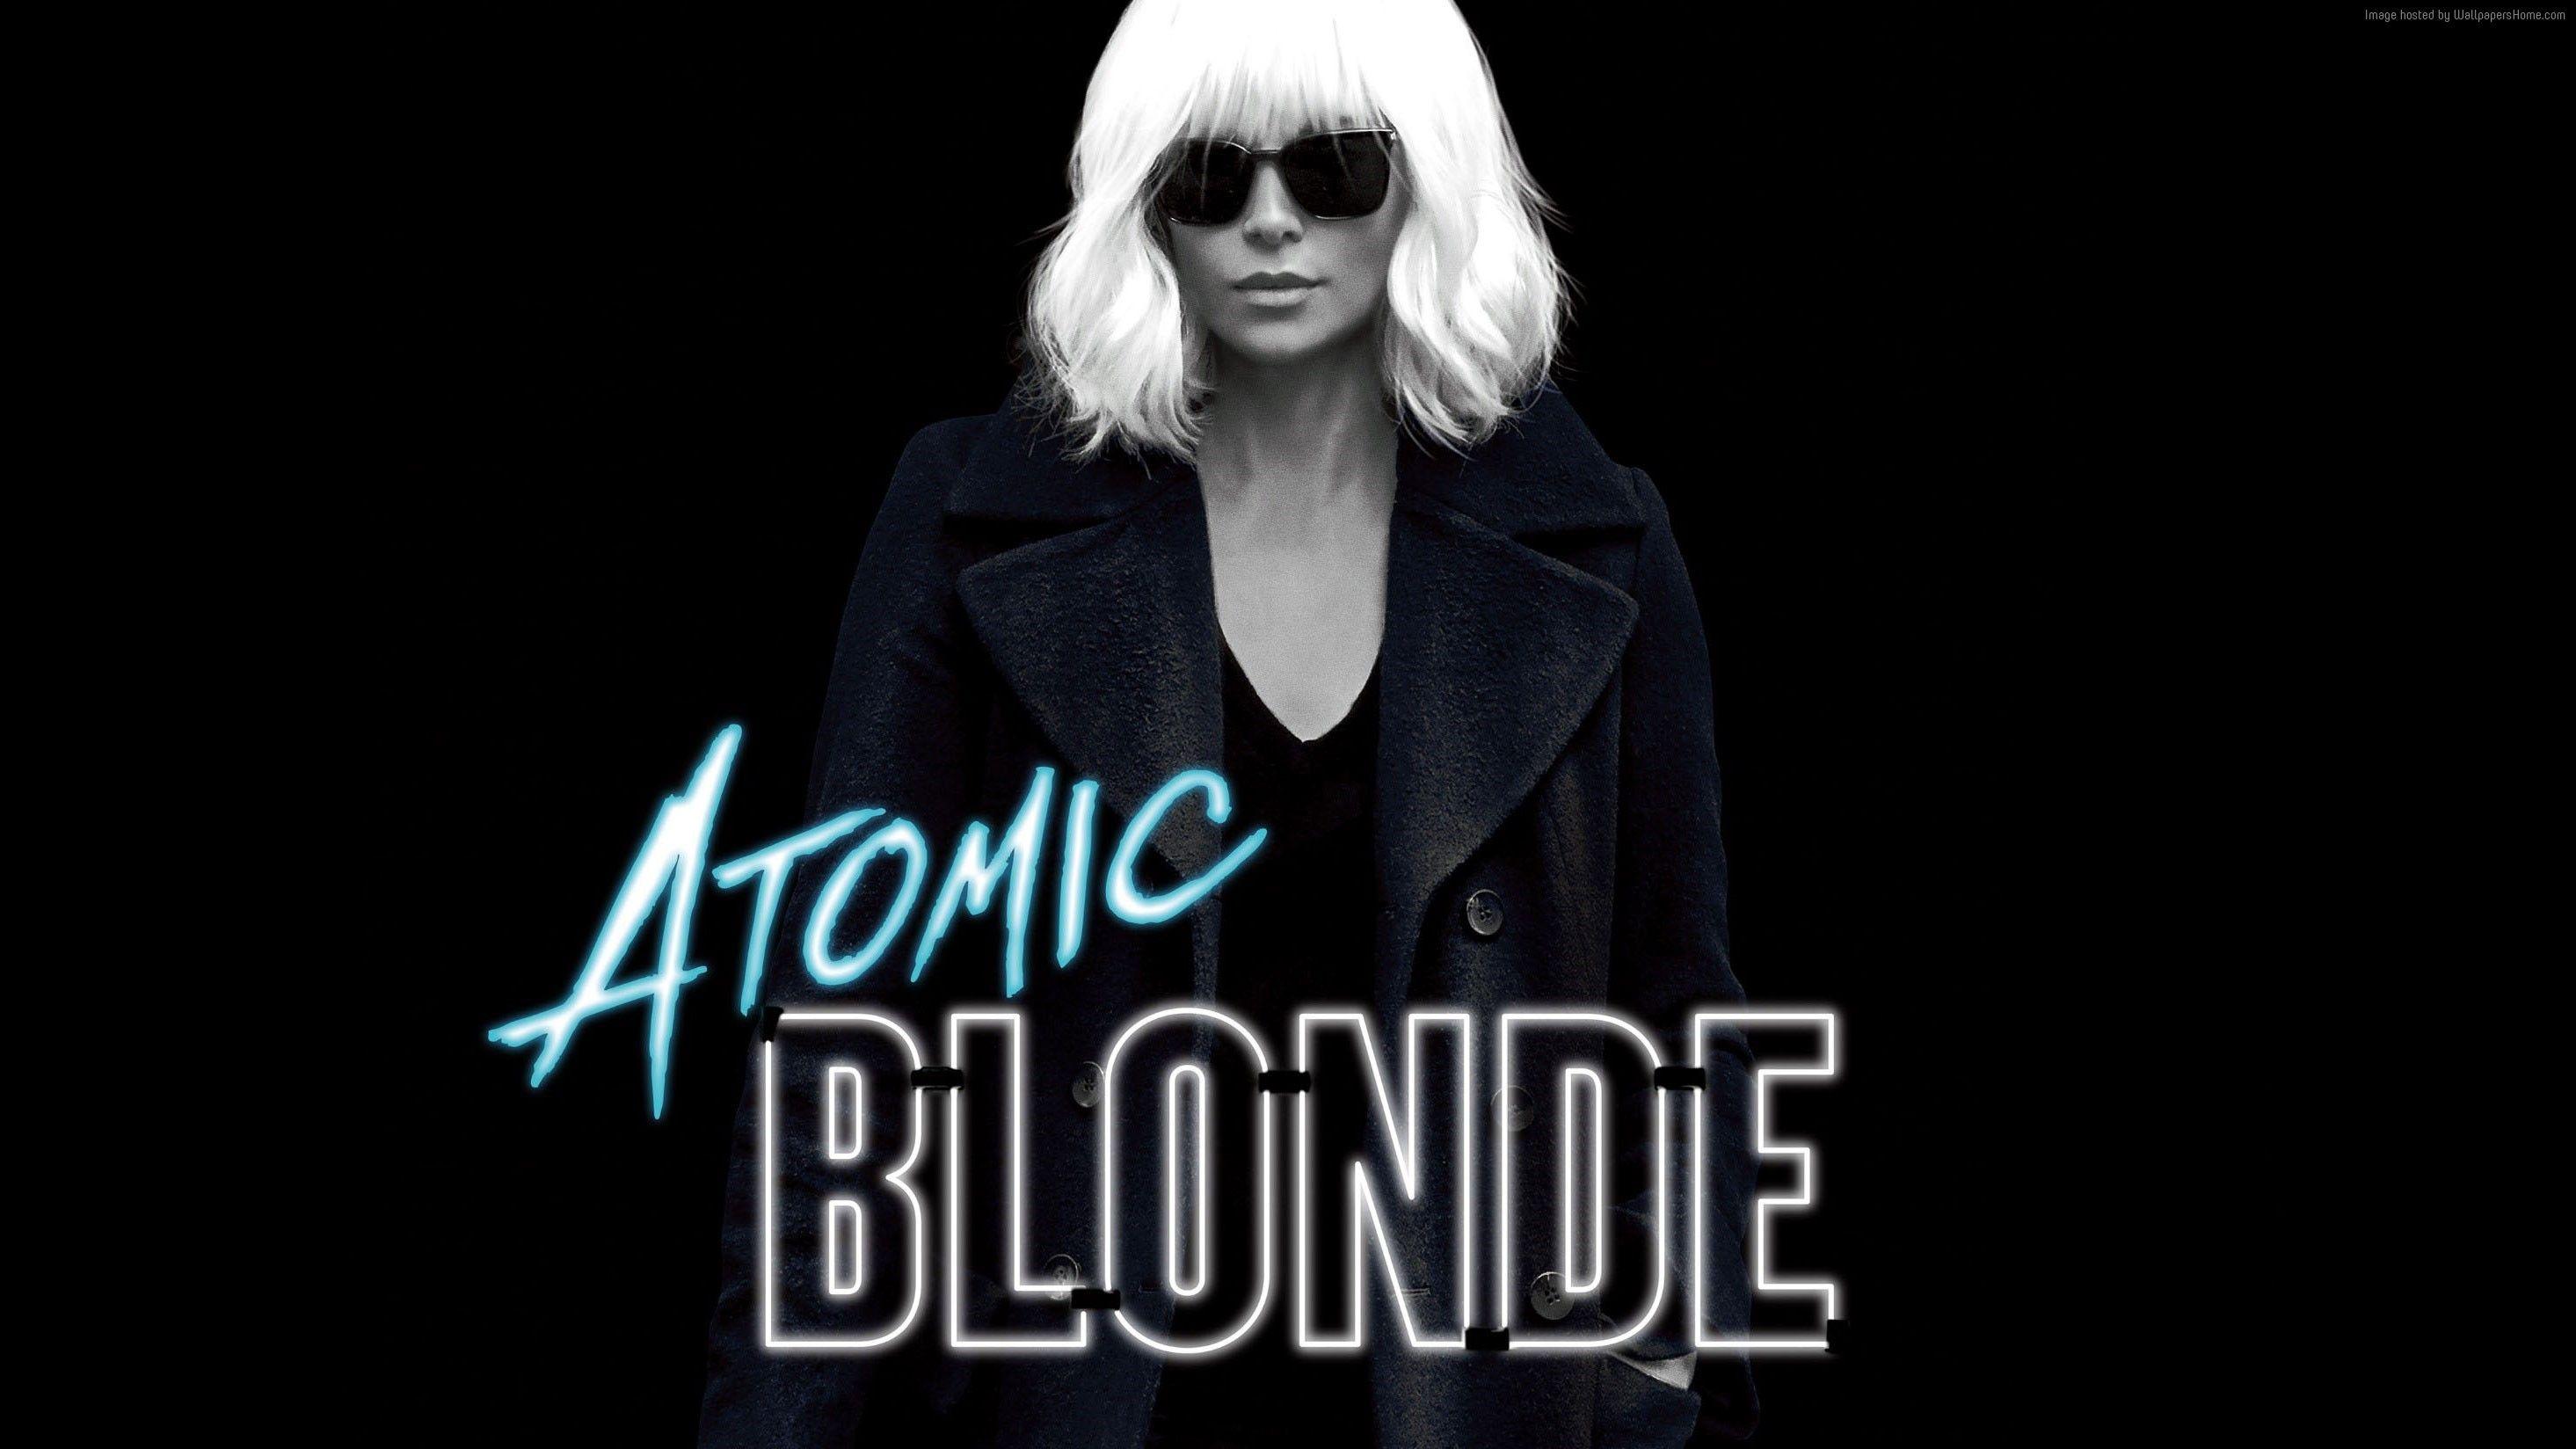 Wallpaper Atomic Blonde, Charlize Theron, 4k, Movies